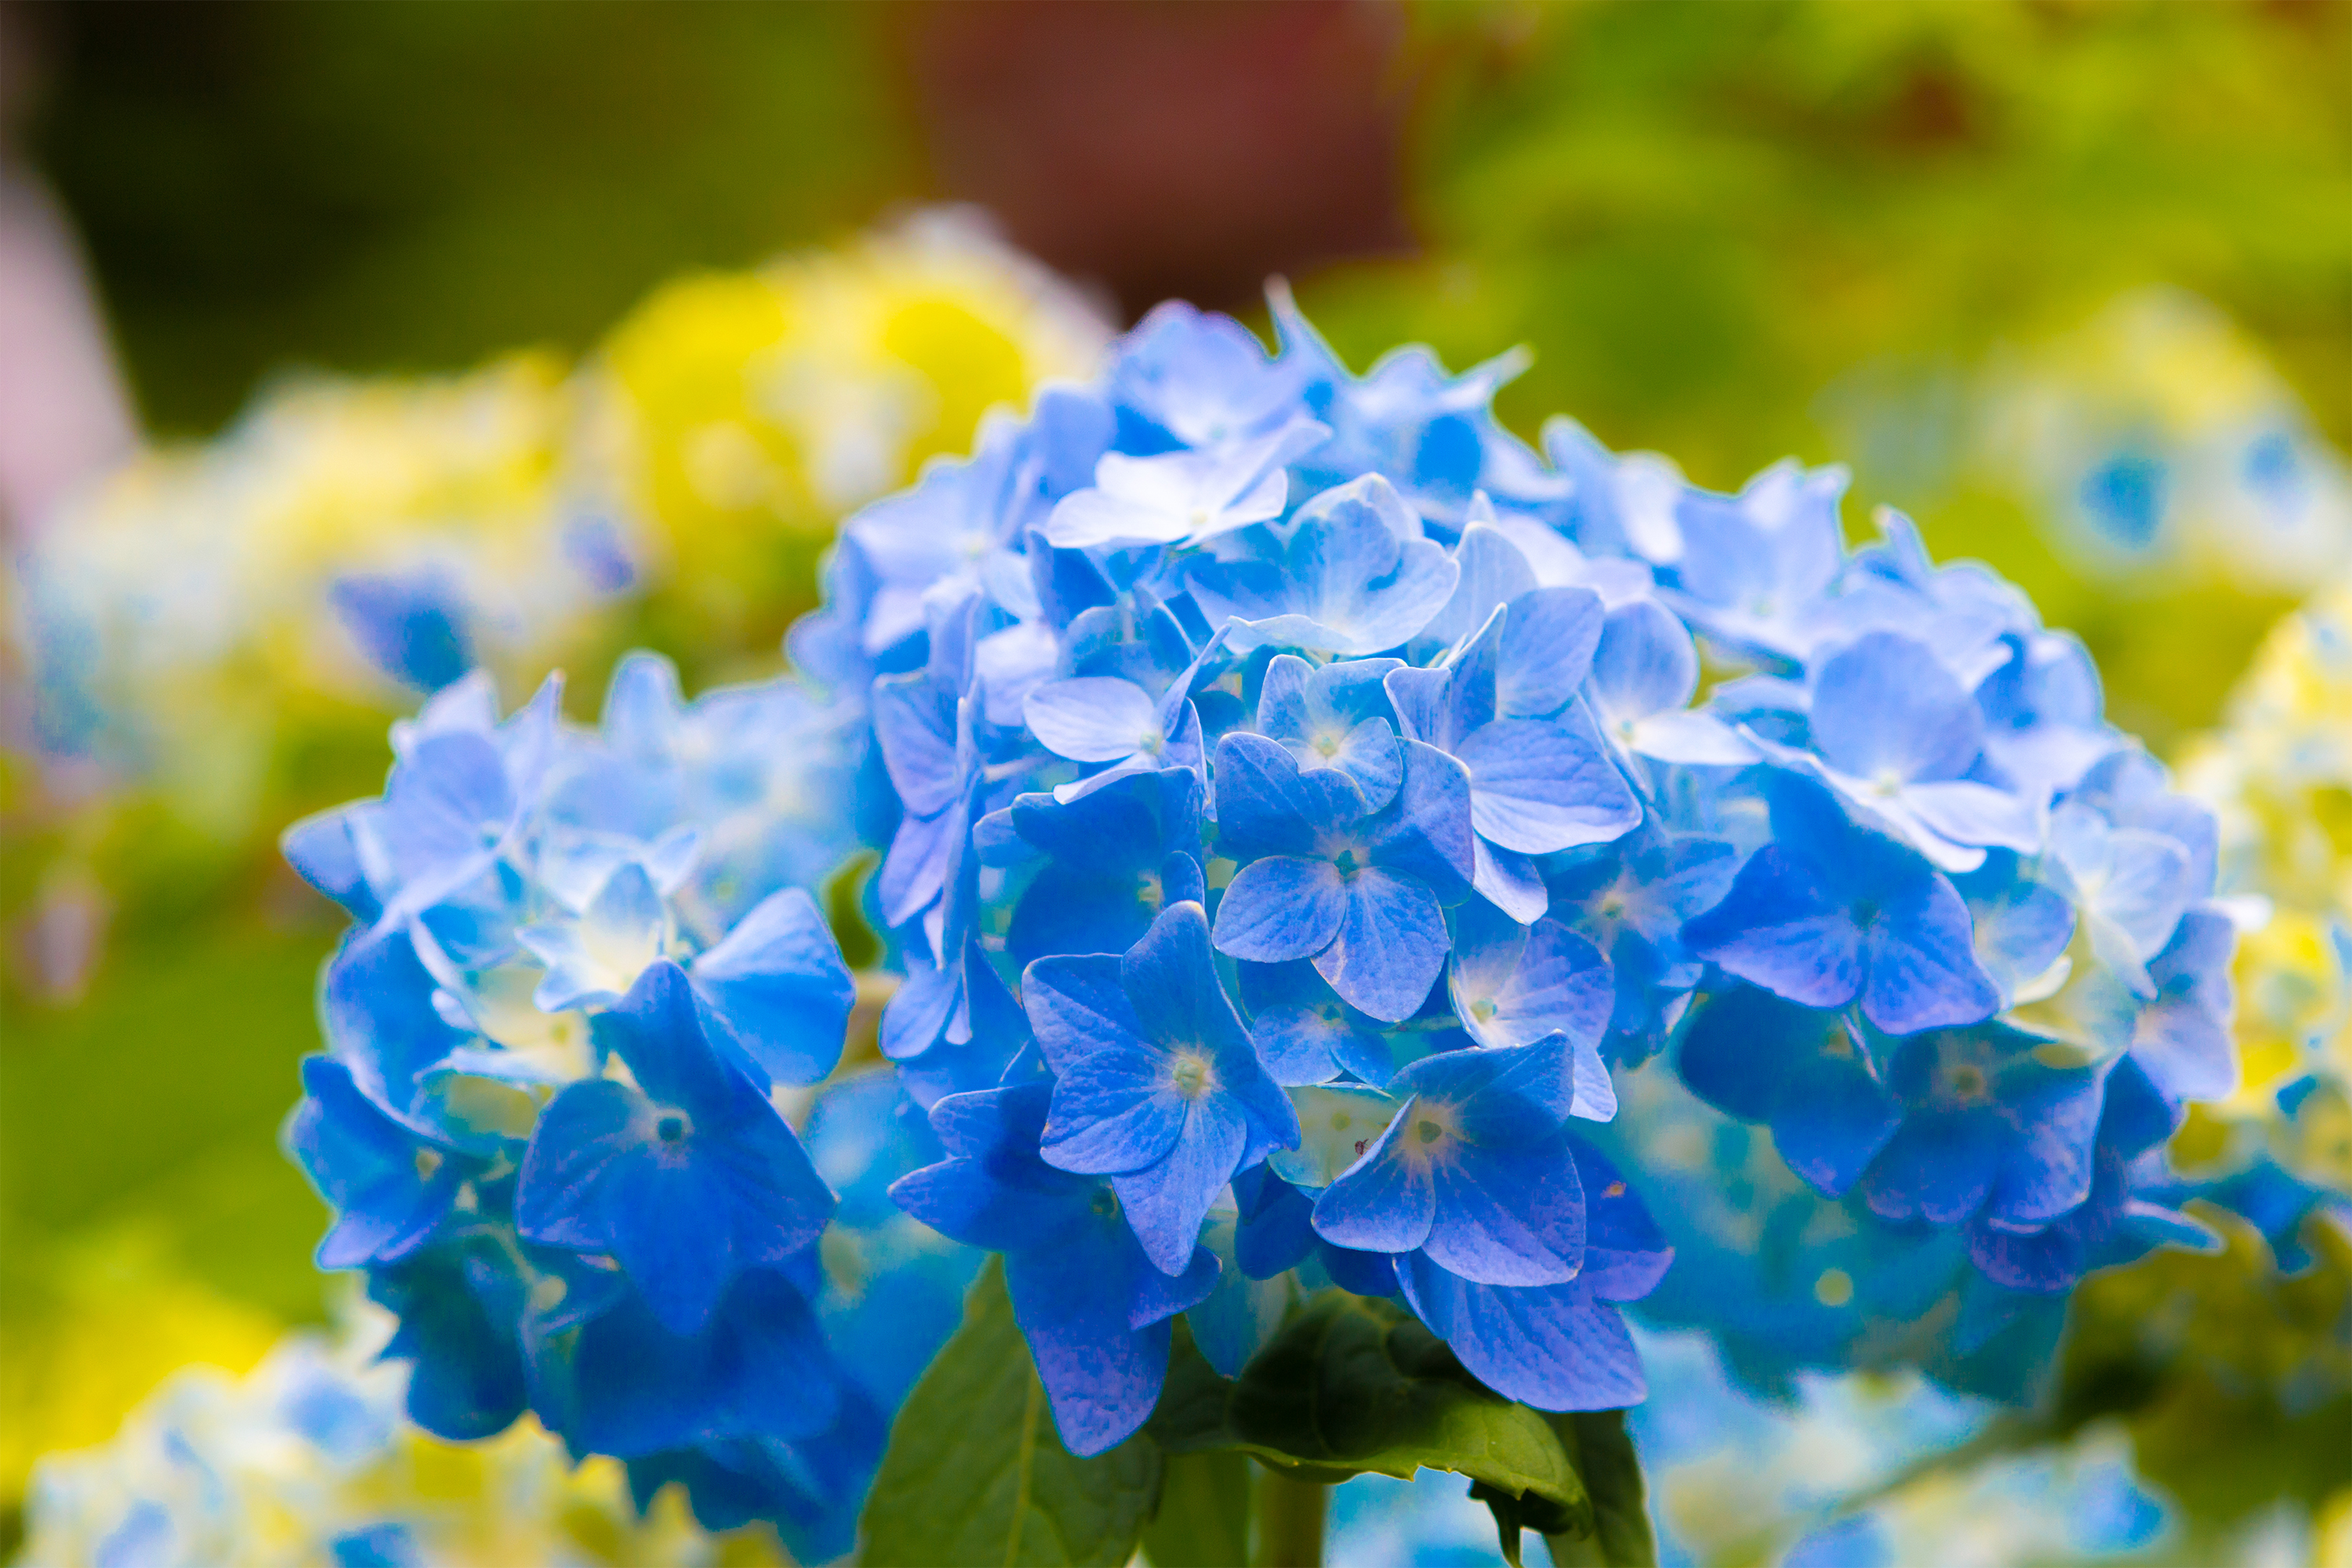 鮮やかな青色の紫陽花 あじさい 02 無料の高画質フリー写真素材 イメージズラボ